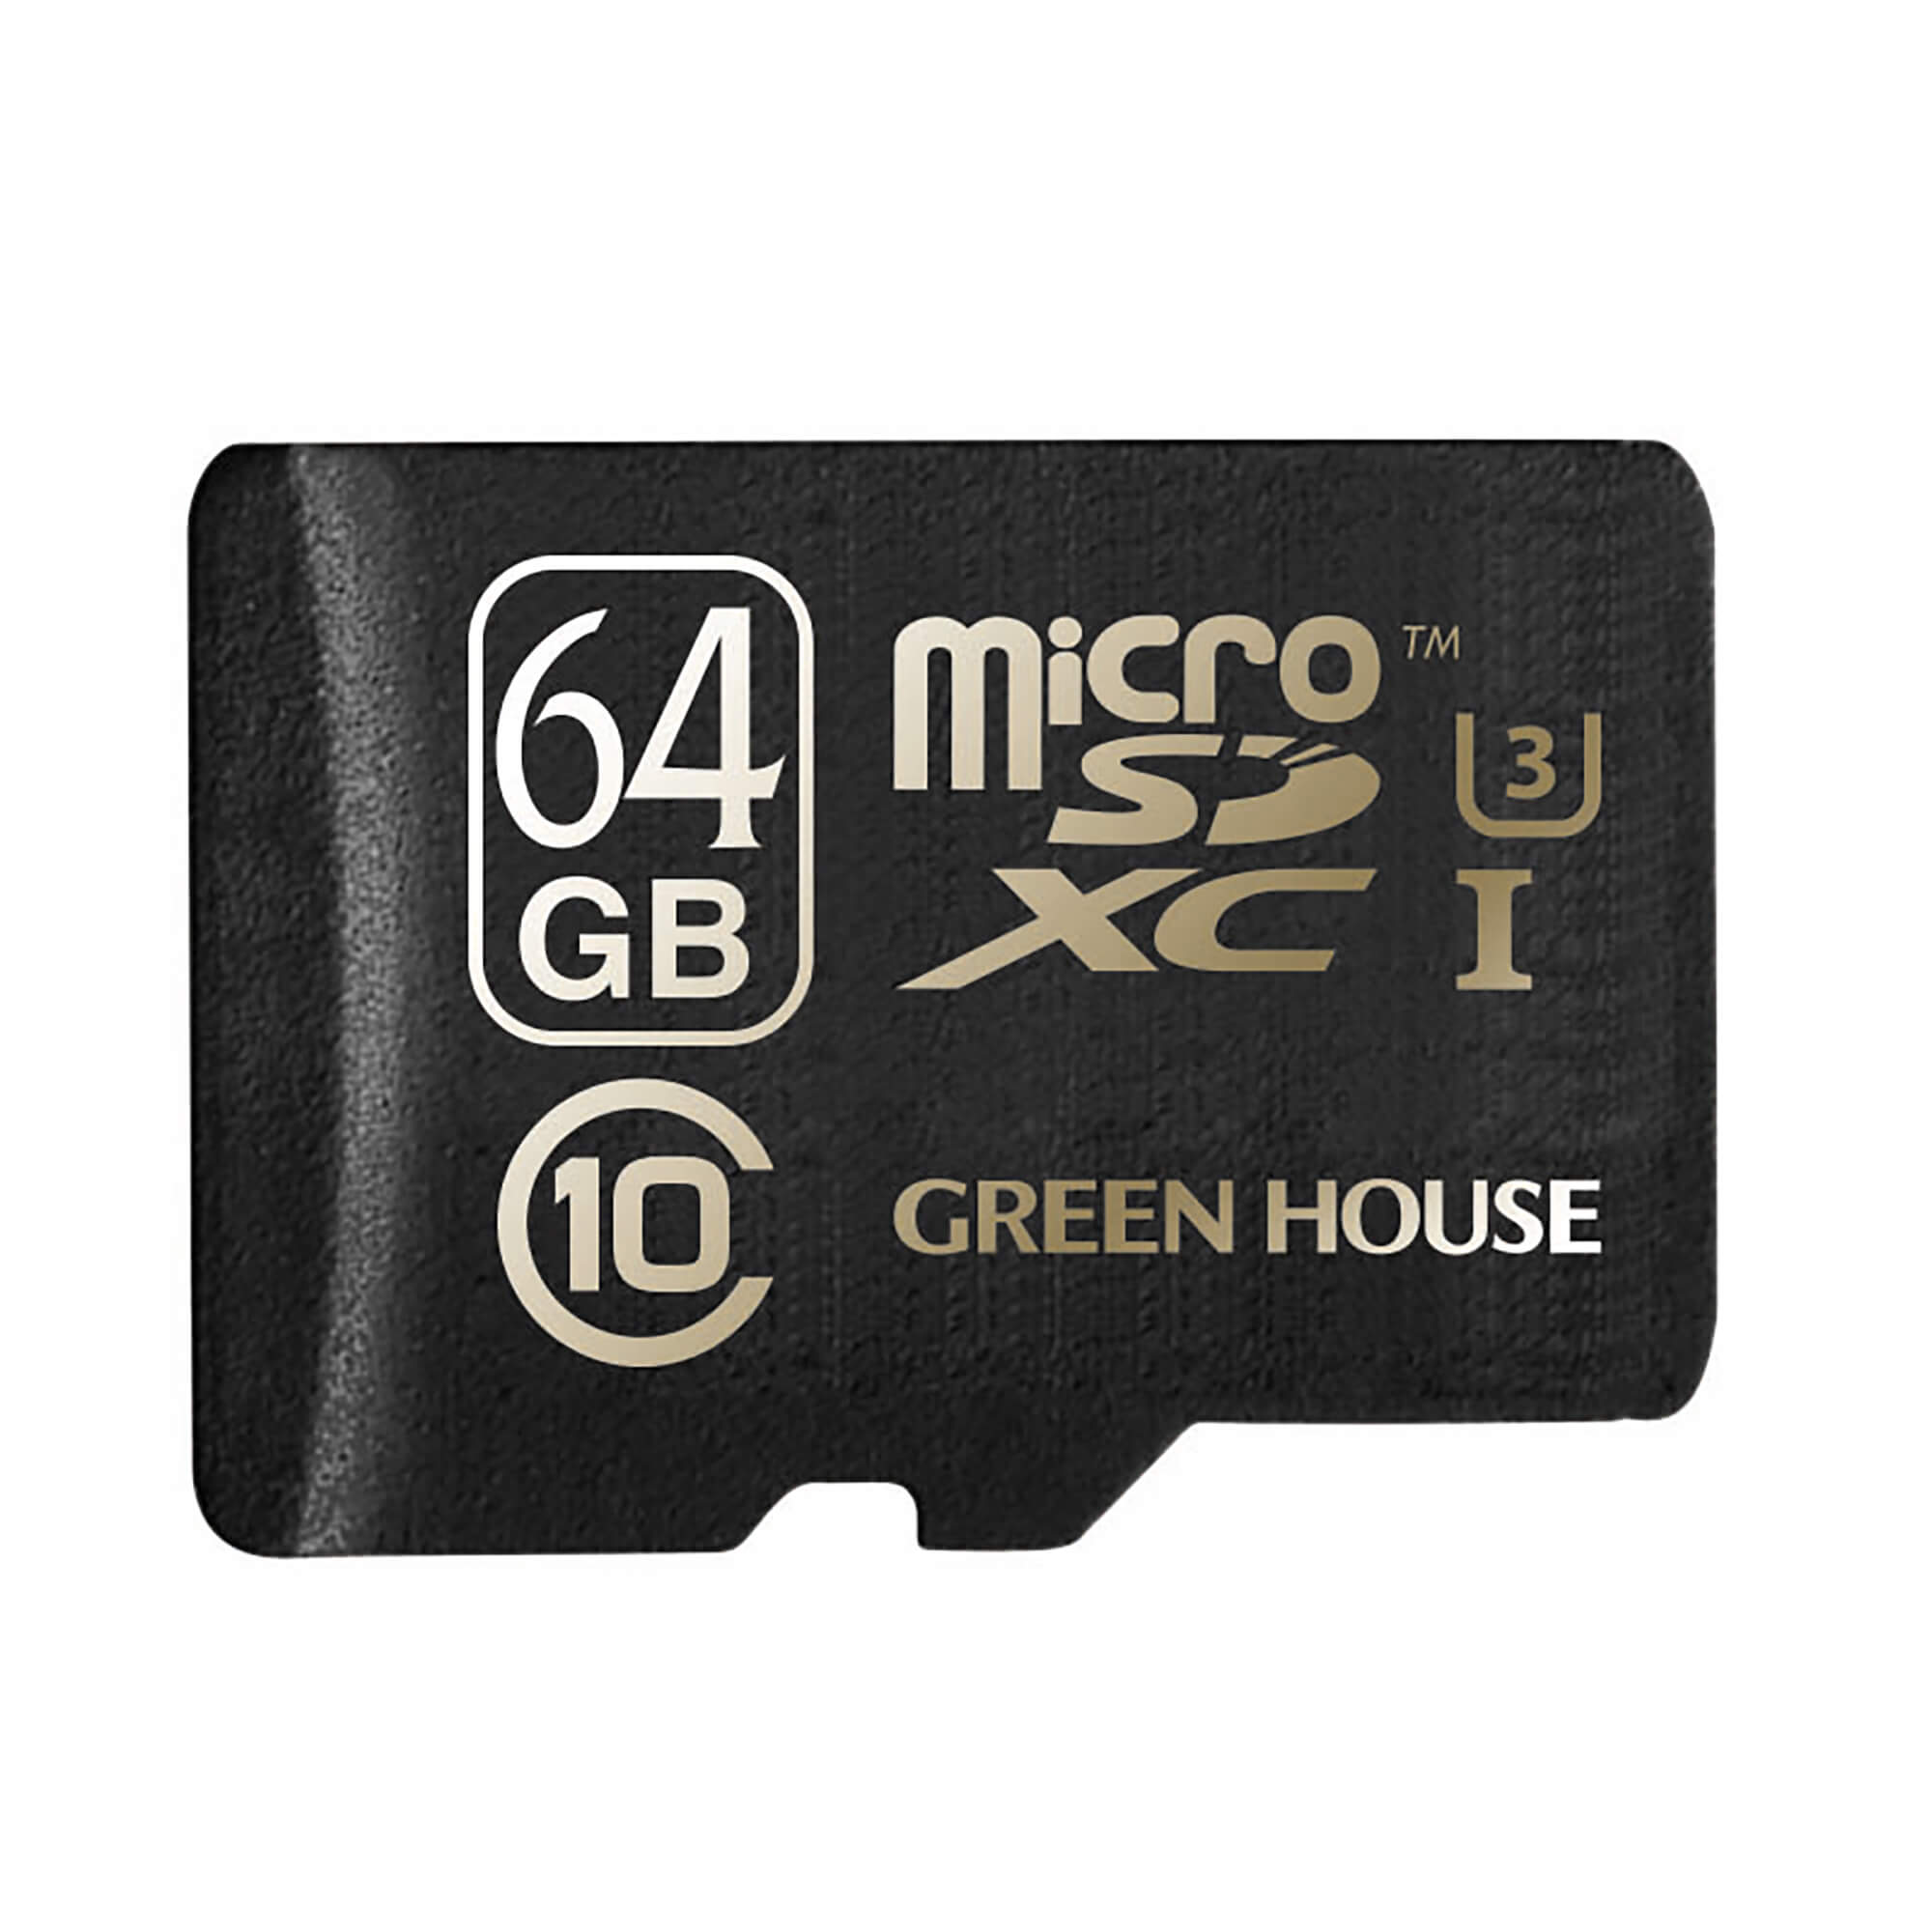 新しいスタイル グリーンハウス ハードディスクに匹敵する容量 512GB